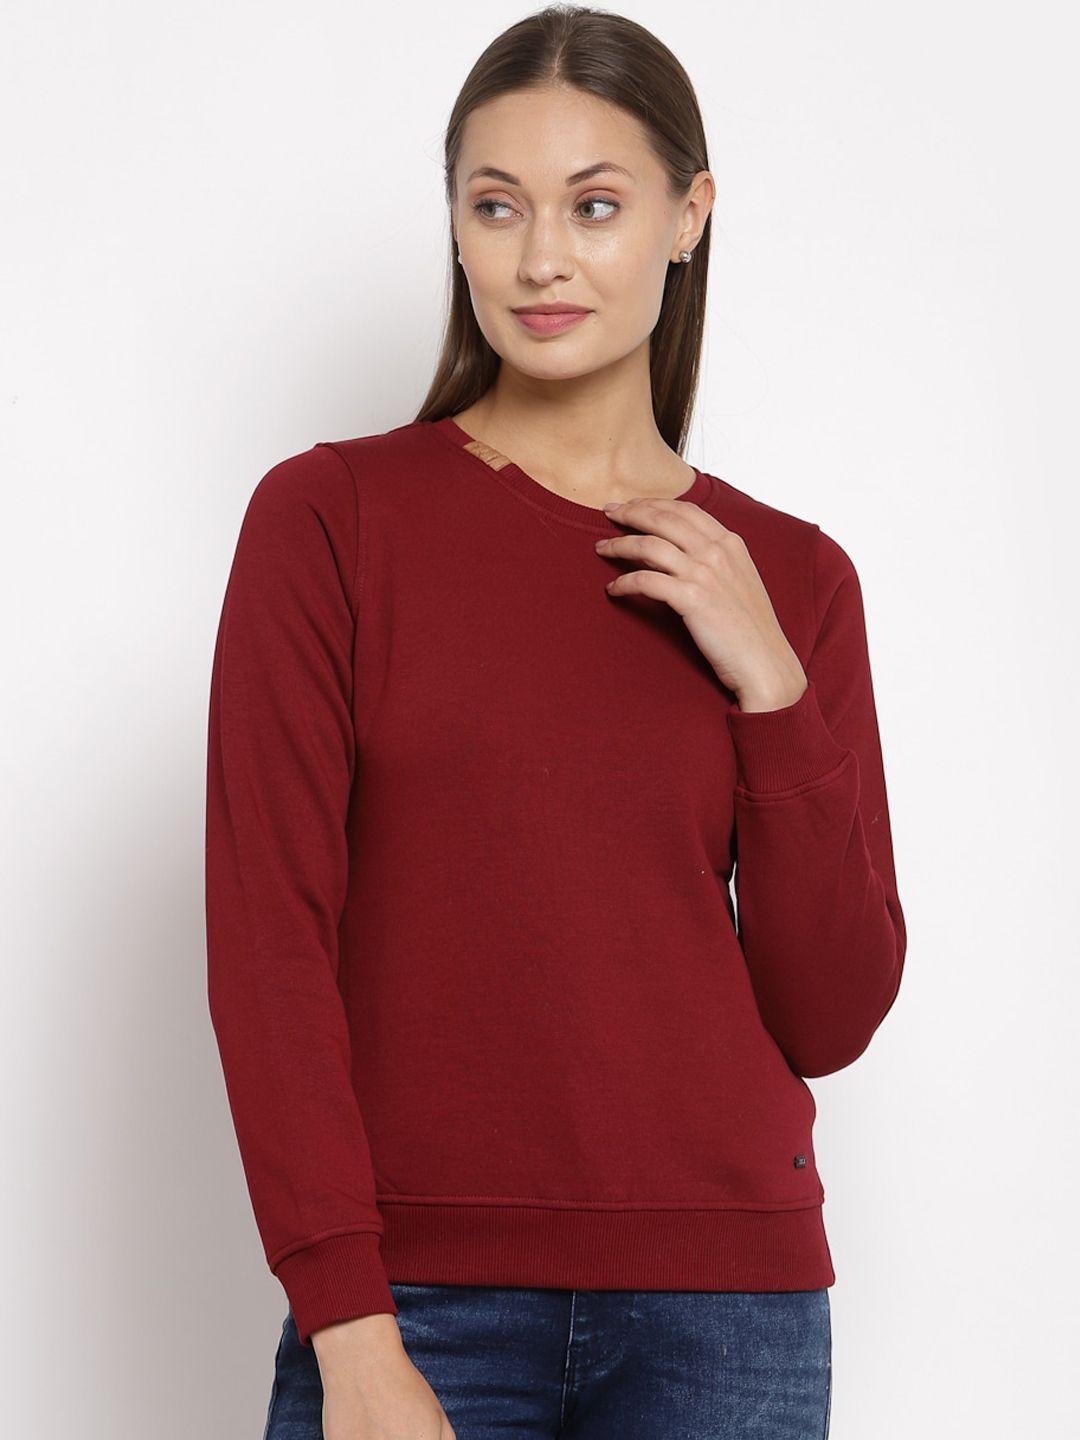 juelle-women-maroon-solid-sweatshirt